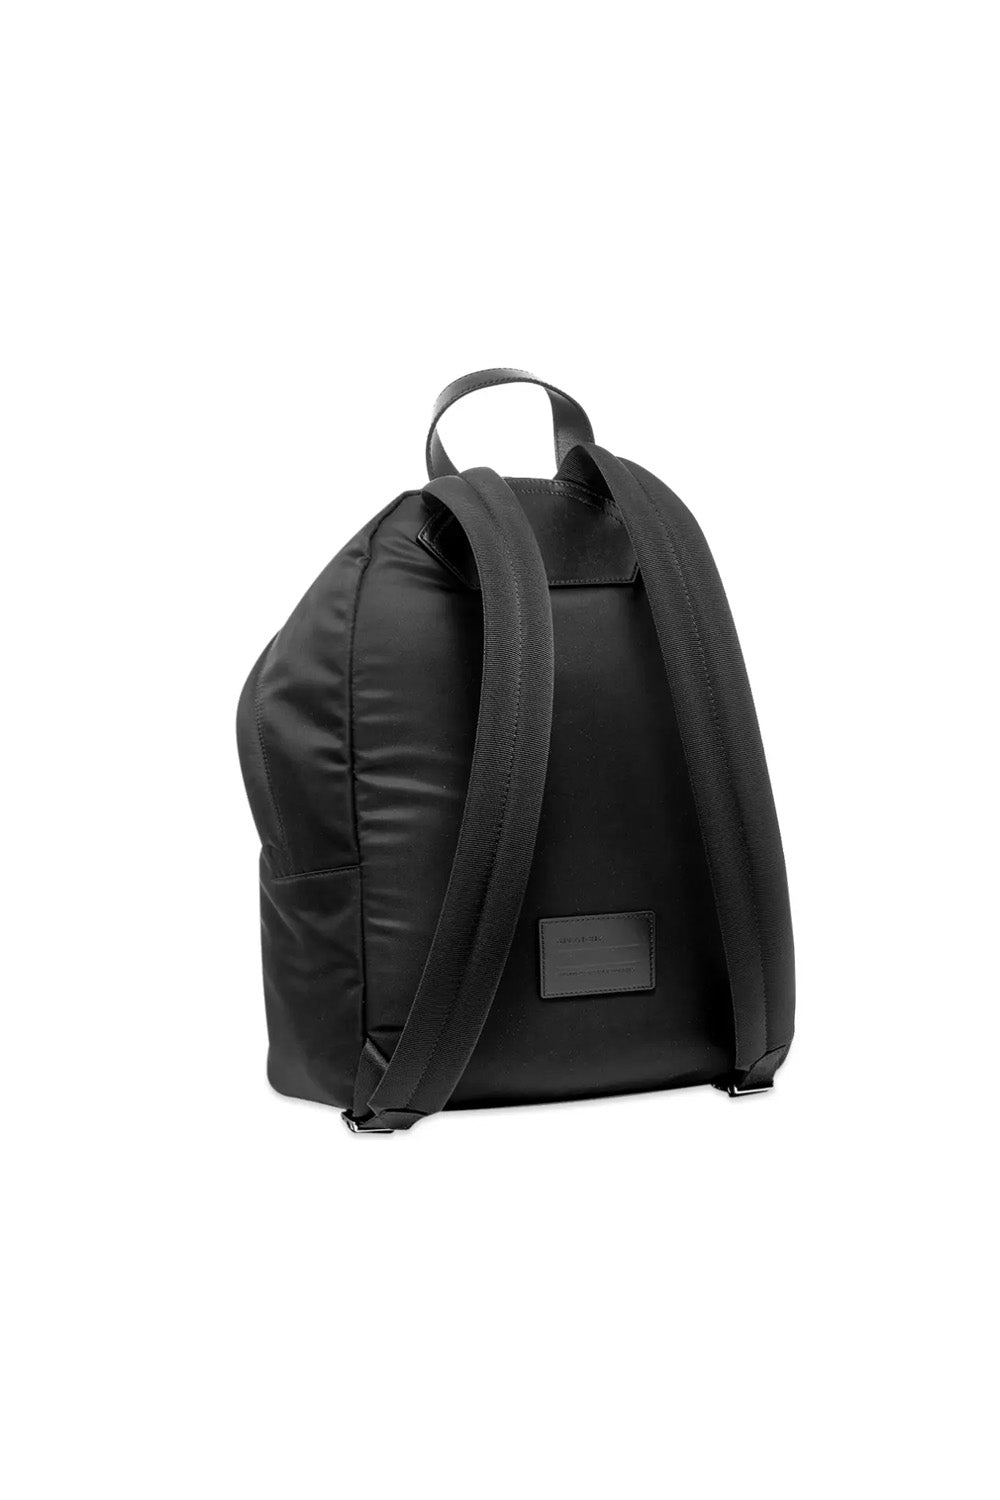 Givenchy Urban Sunset signature-logo backpack